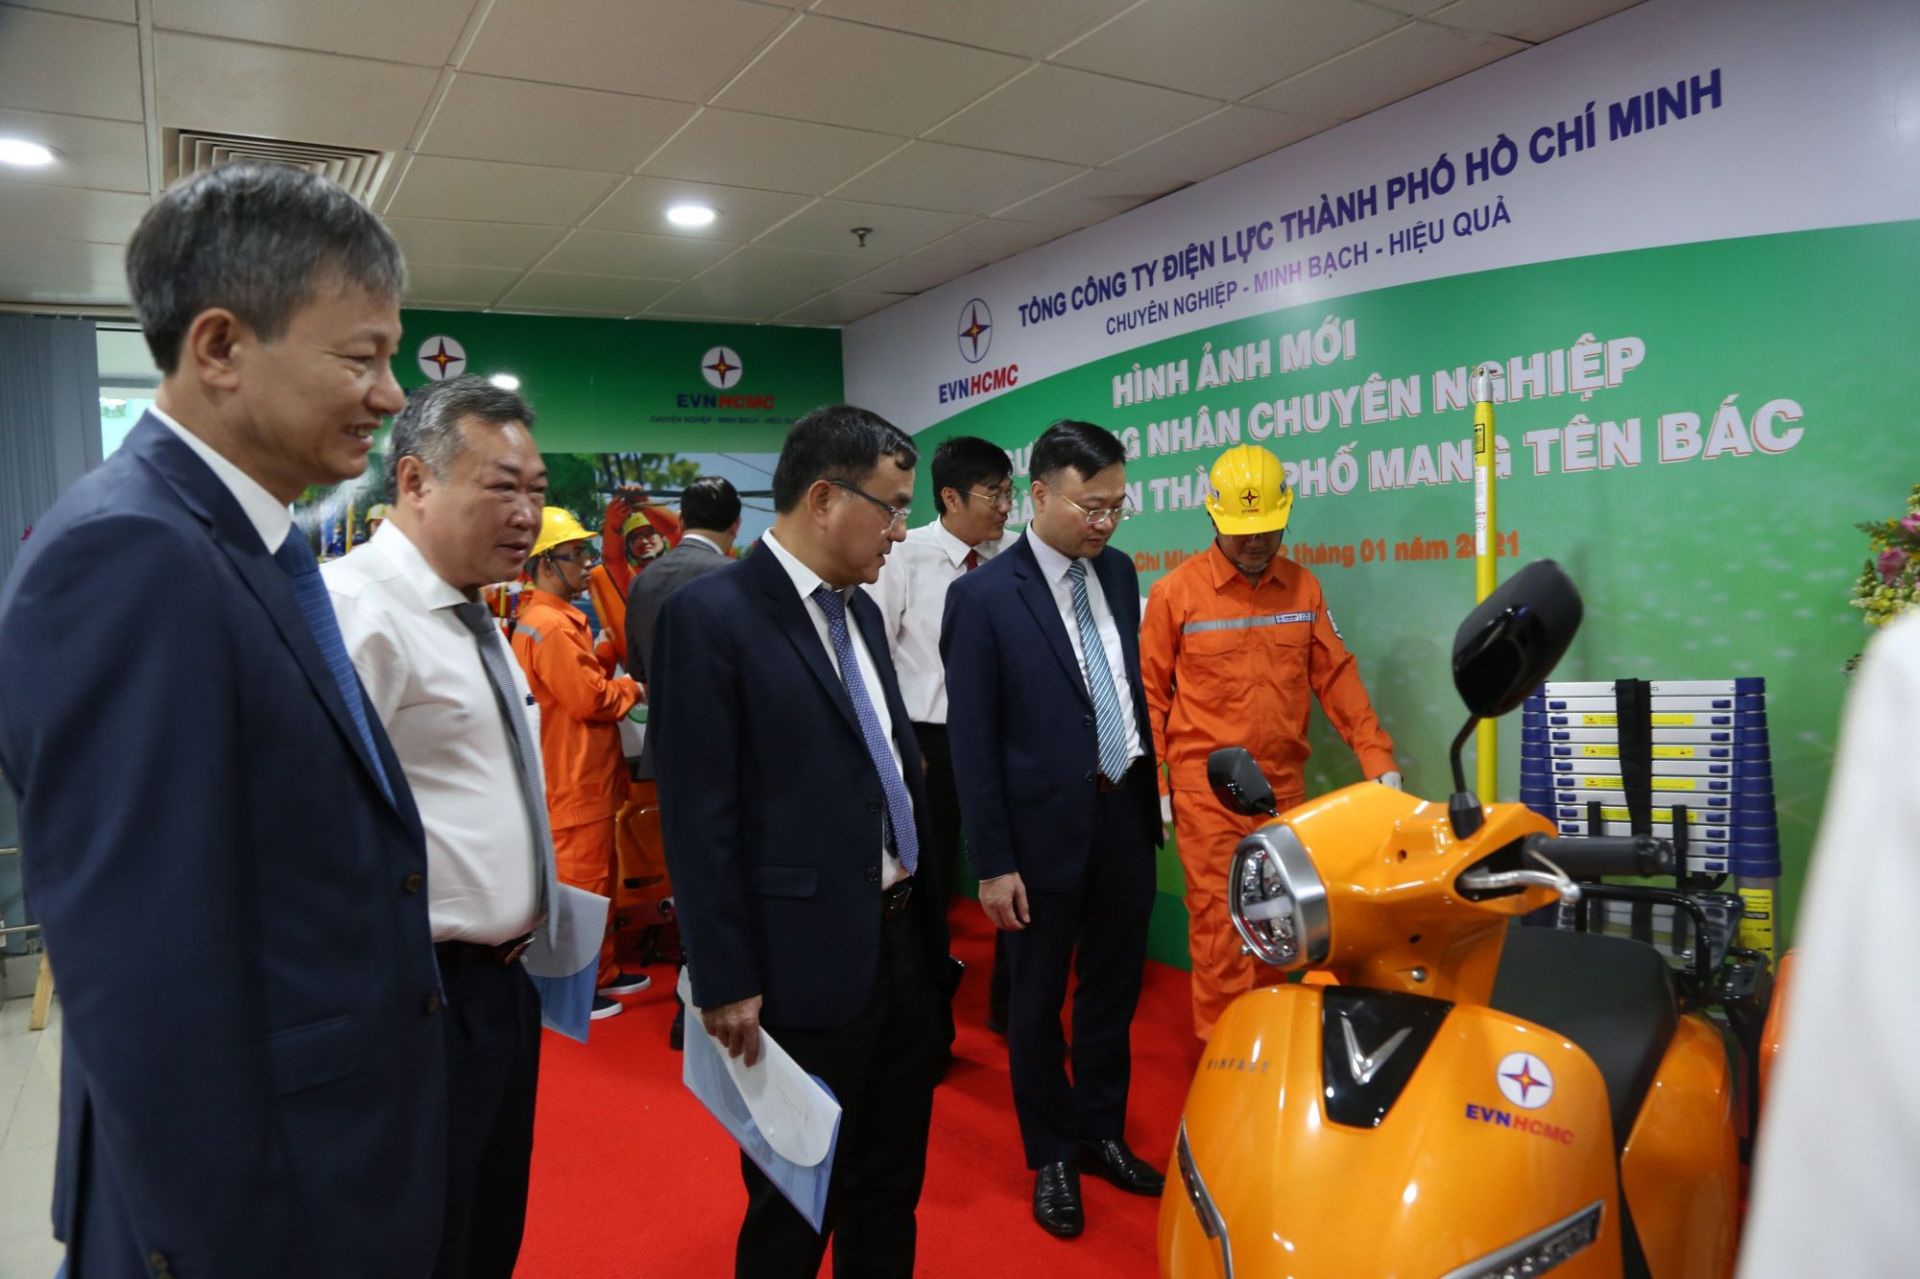 Ông Phạm Quốc Bảo (áo trắng) - Bí thư Đảng ủy, Chủ tịch HĐTV EVNHCMC giới thiệu với lãnh đạo EVN về mẫu xe và bộ công cụ mới cho người công nhân điện lực Thành phố